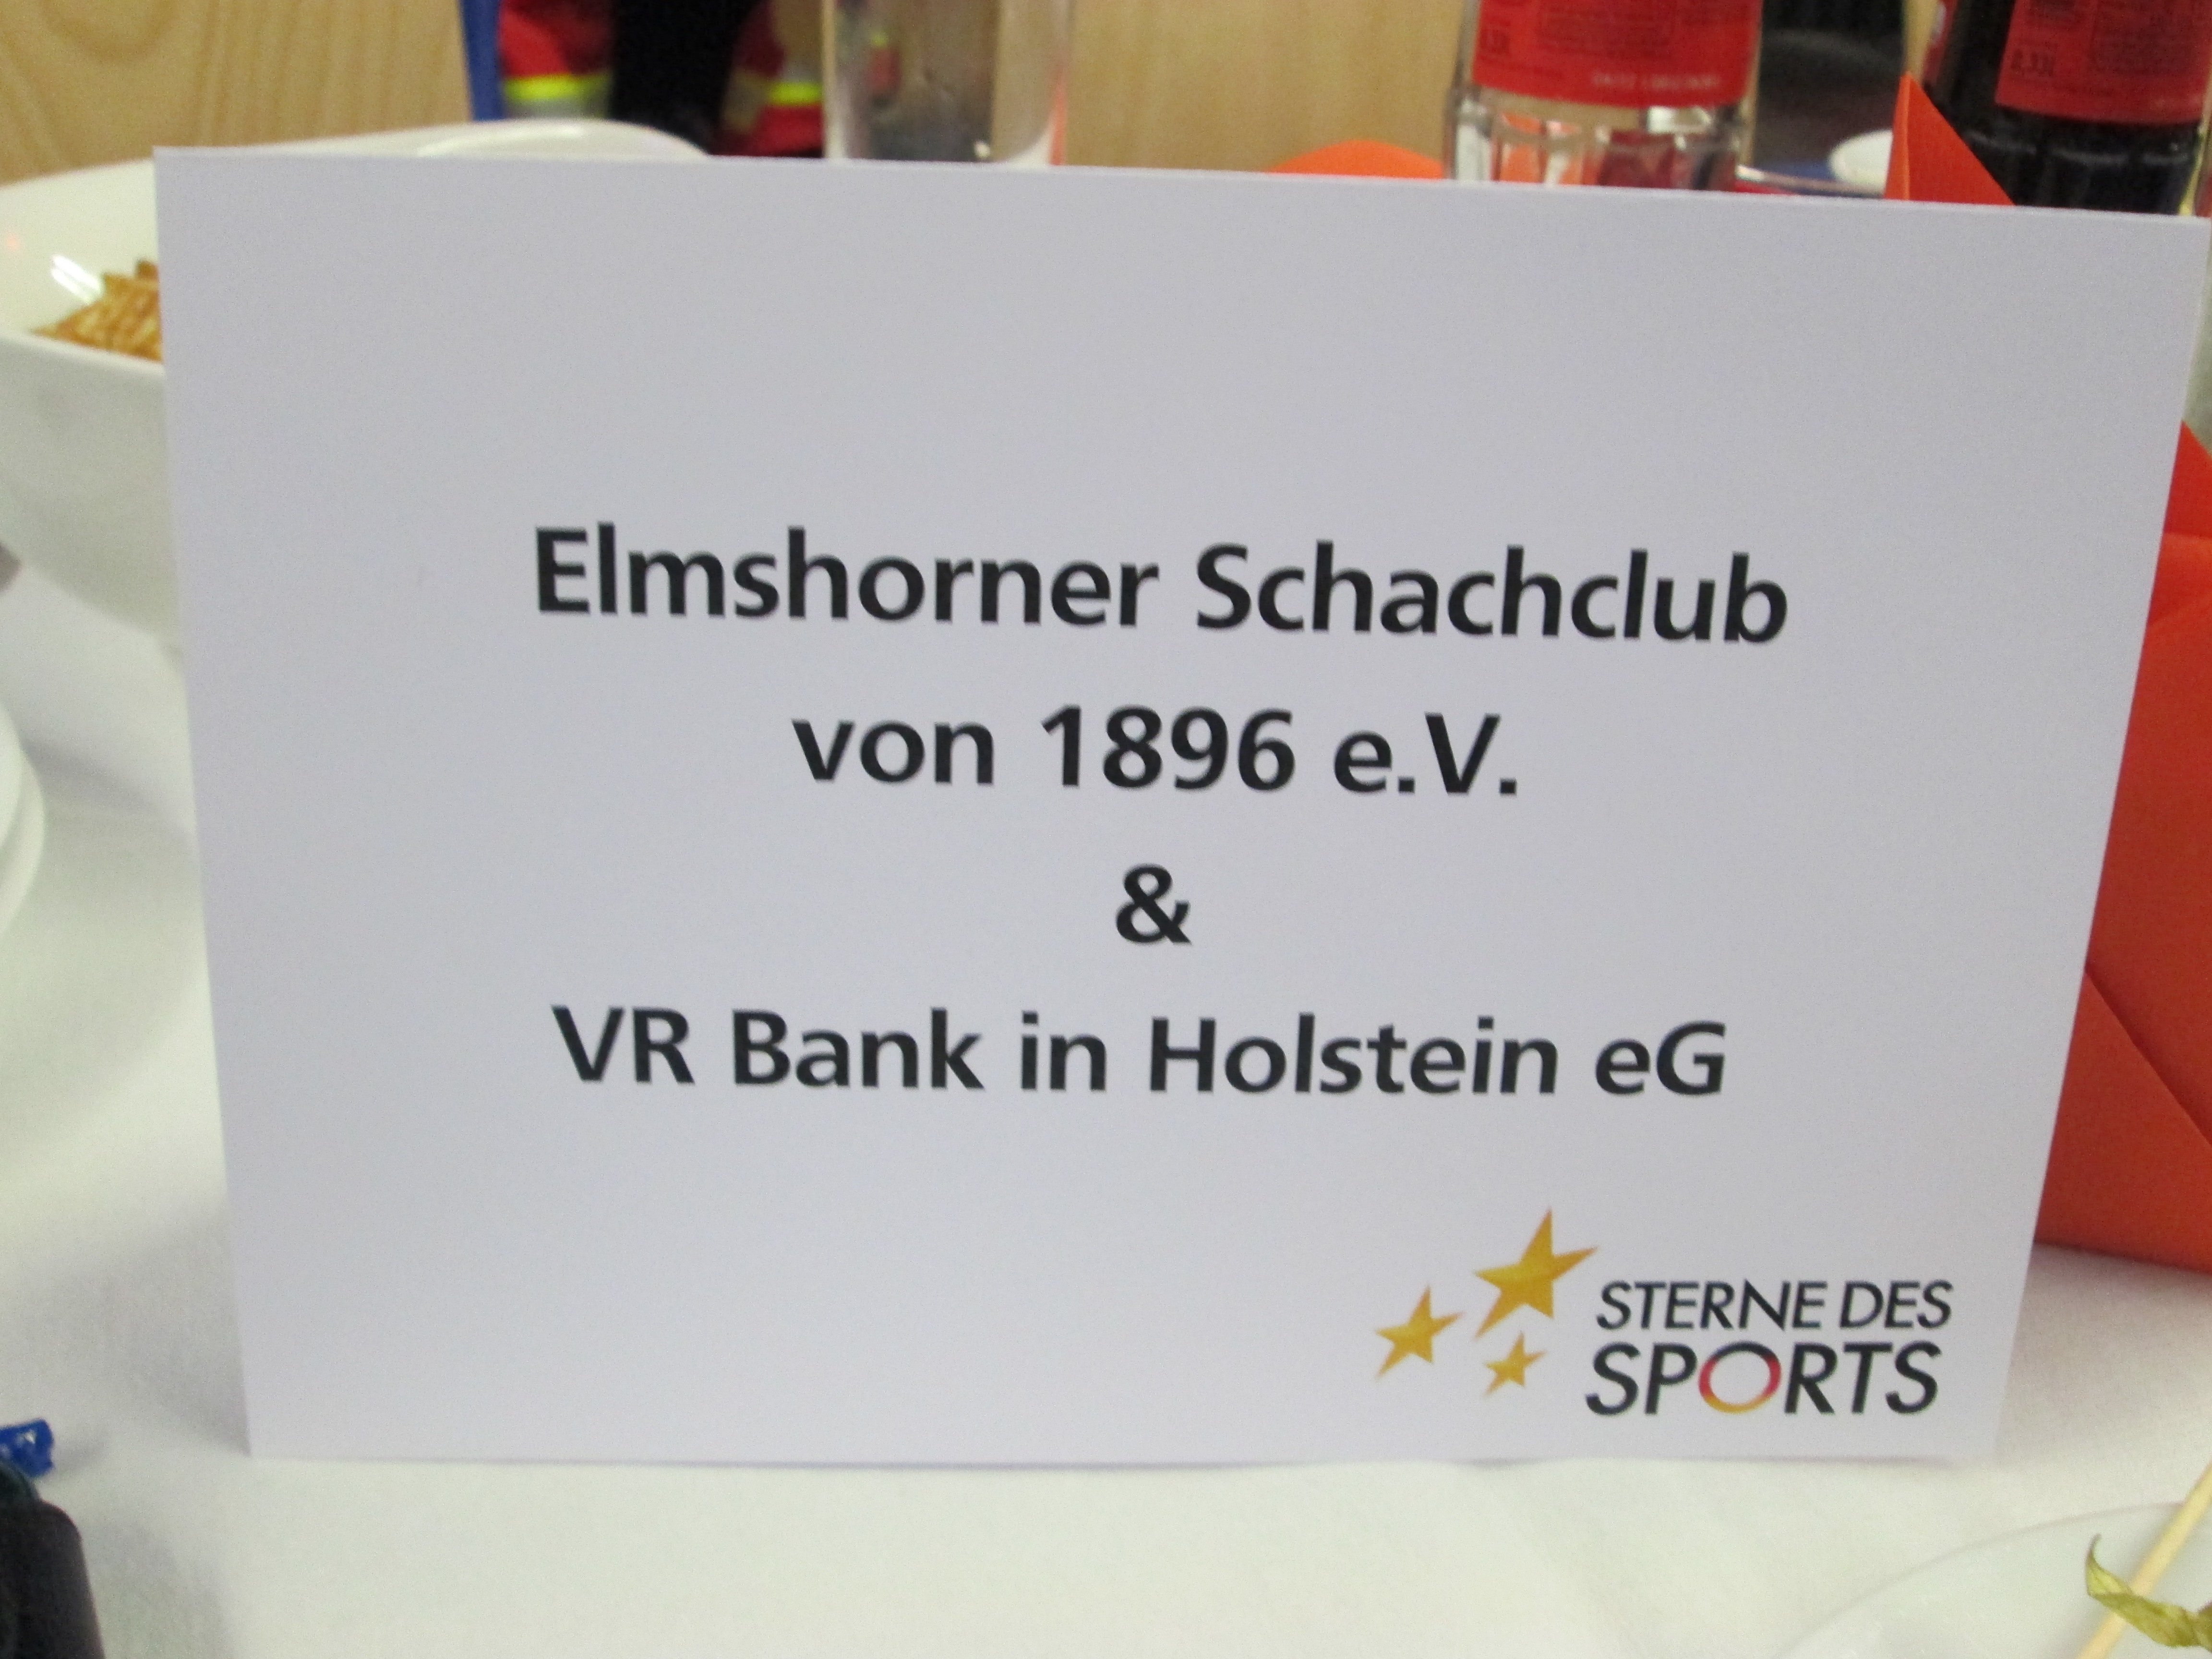 Elmshorner Schachclub v. 1896 e.V. & VR Bank in Holstein eG